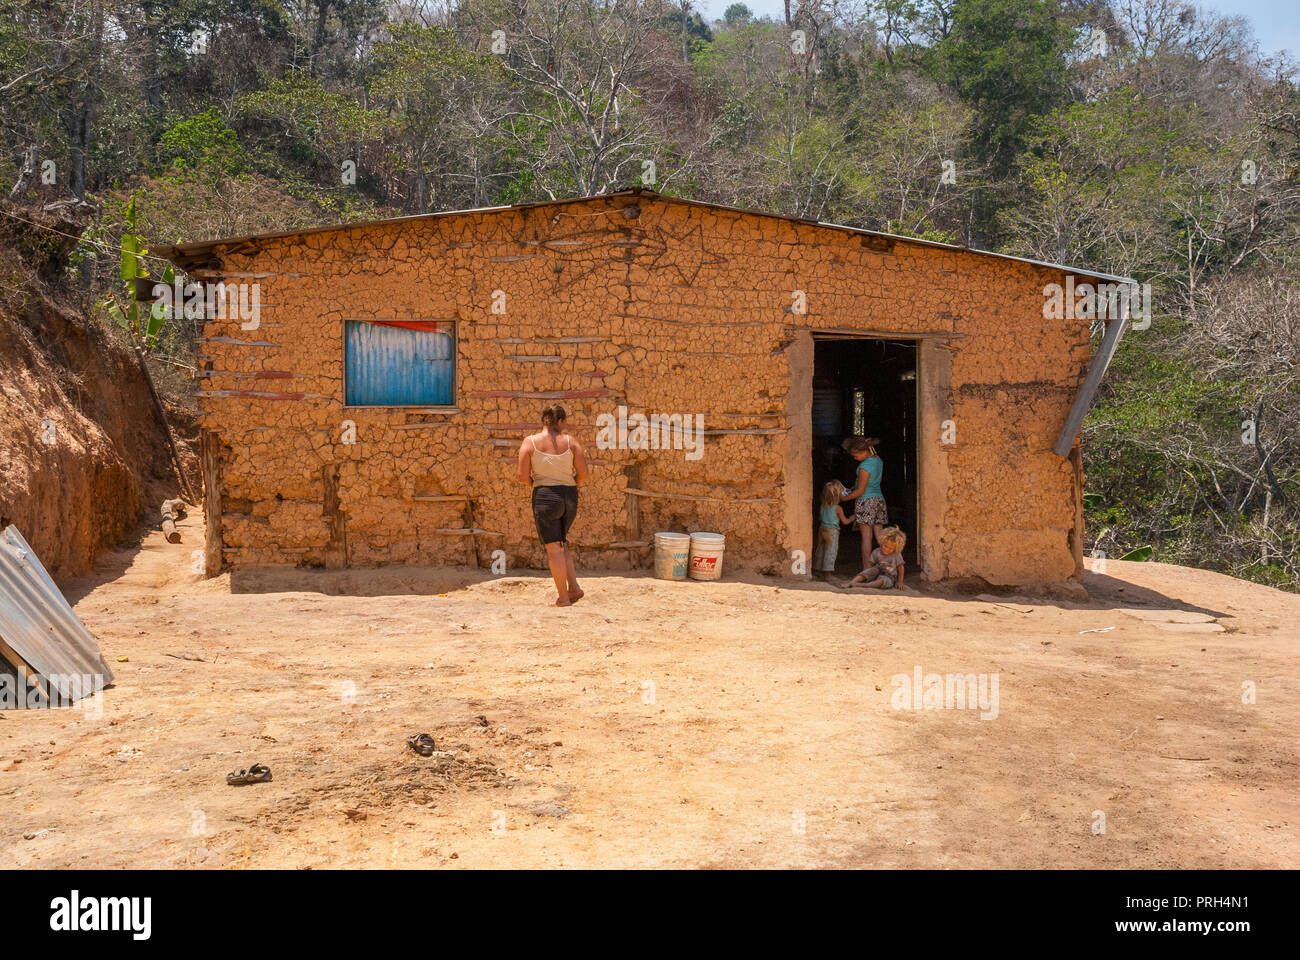 Maison de bahareque (maisons de bois ou de roseaux liés et les couvrir de boue). L'extrême pauvreté dans les zones rurales, avec un manque de services de base, Banque D'Images